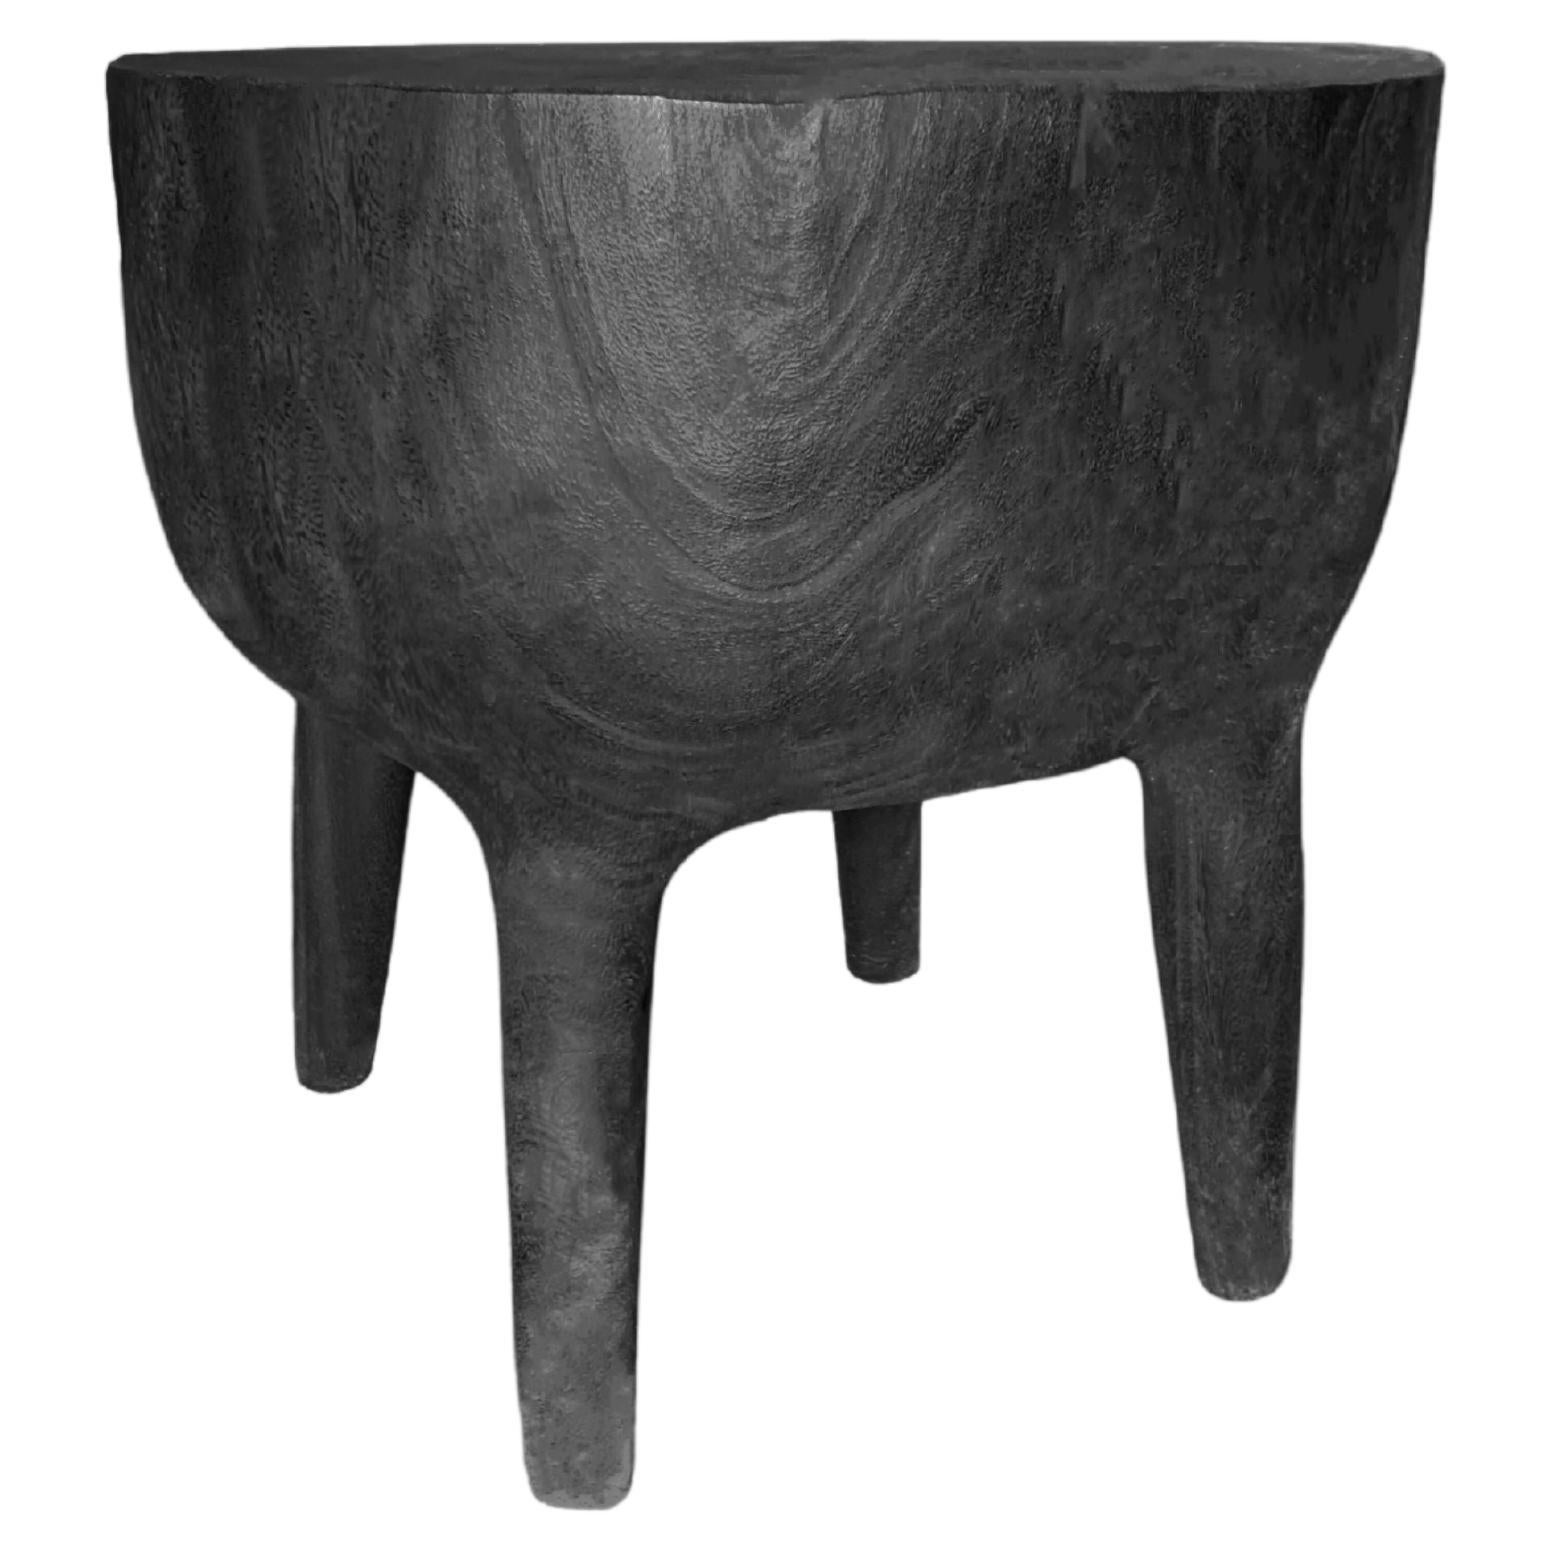 Table d'appoint sculpturale en bois de Mango massif, finition brûlée, organique